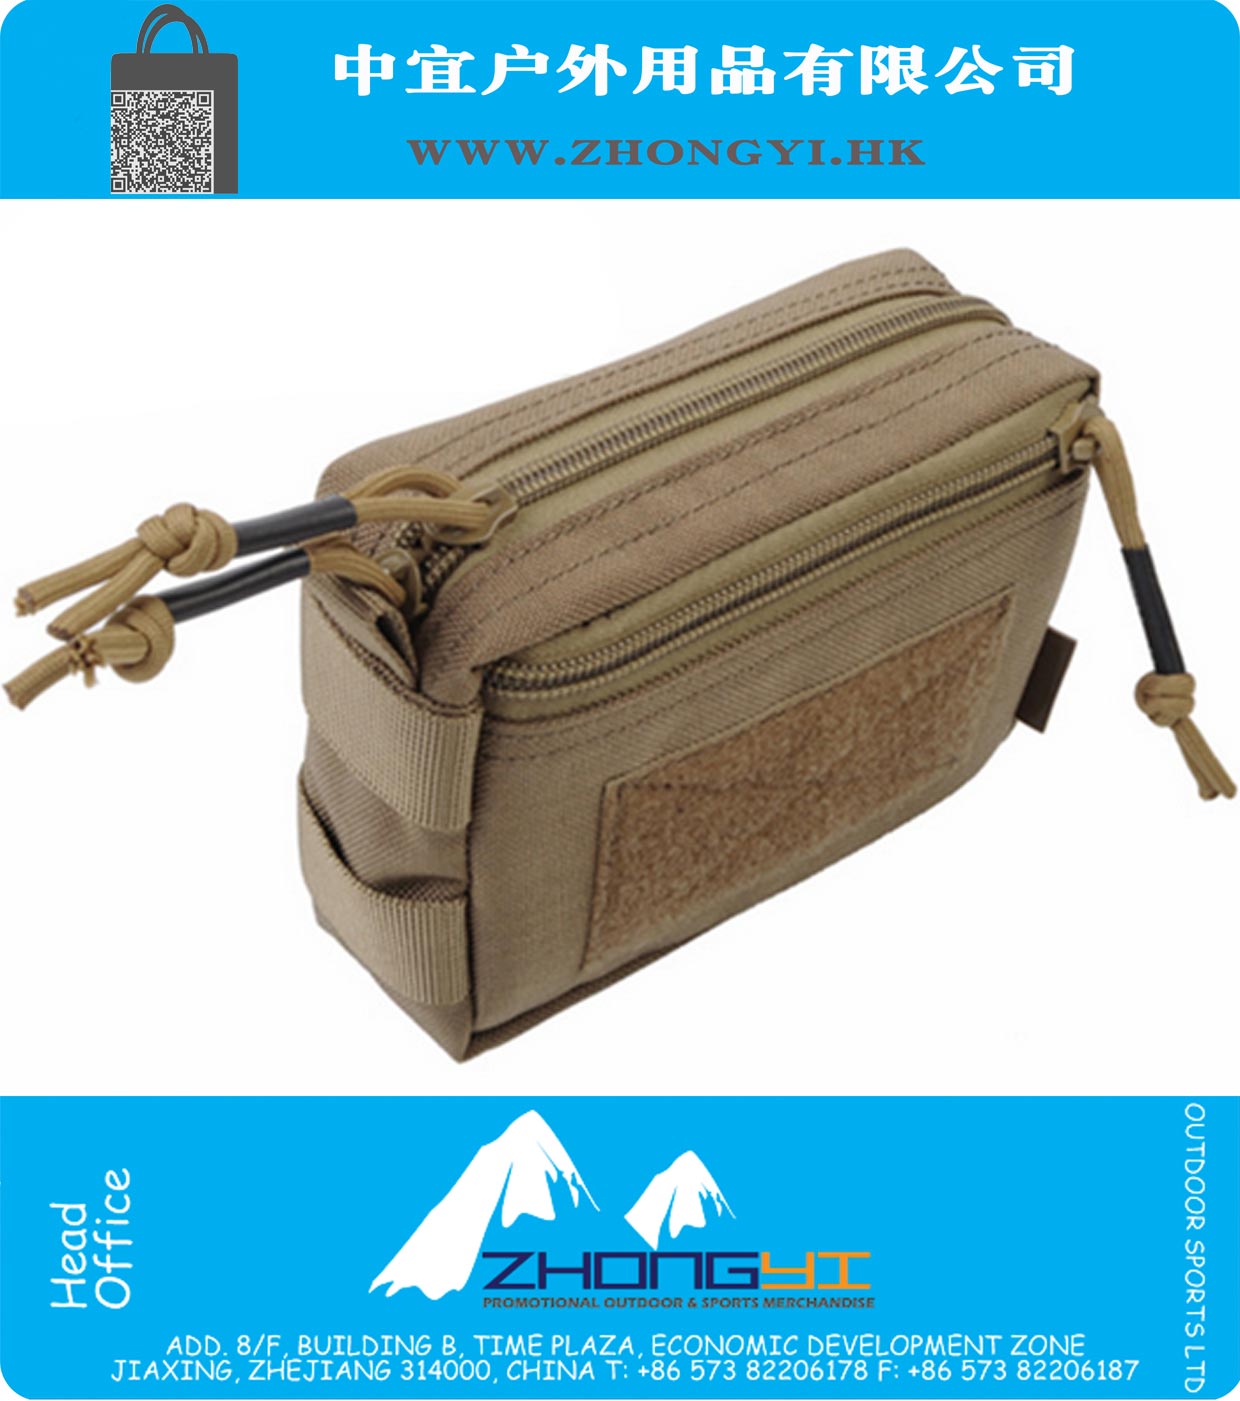 Tactical 1000D Molle Плагин Обломки талия сумка Военного Airsoft пейнтбол EDC передачи Инструмент чехол для хранения сумки